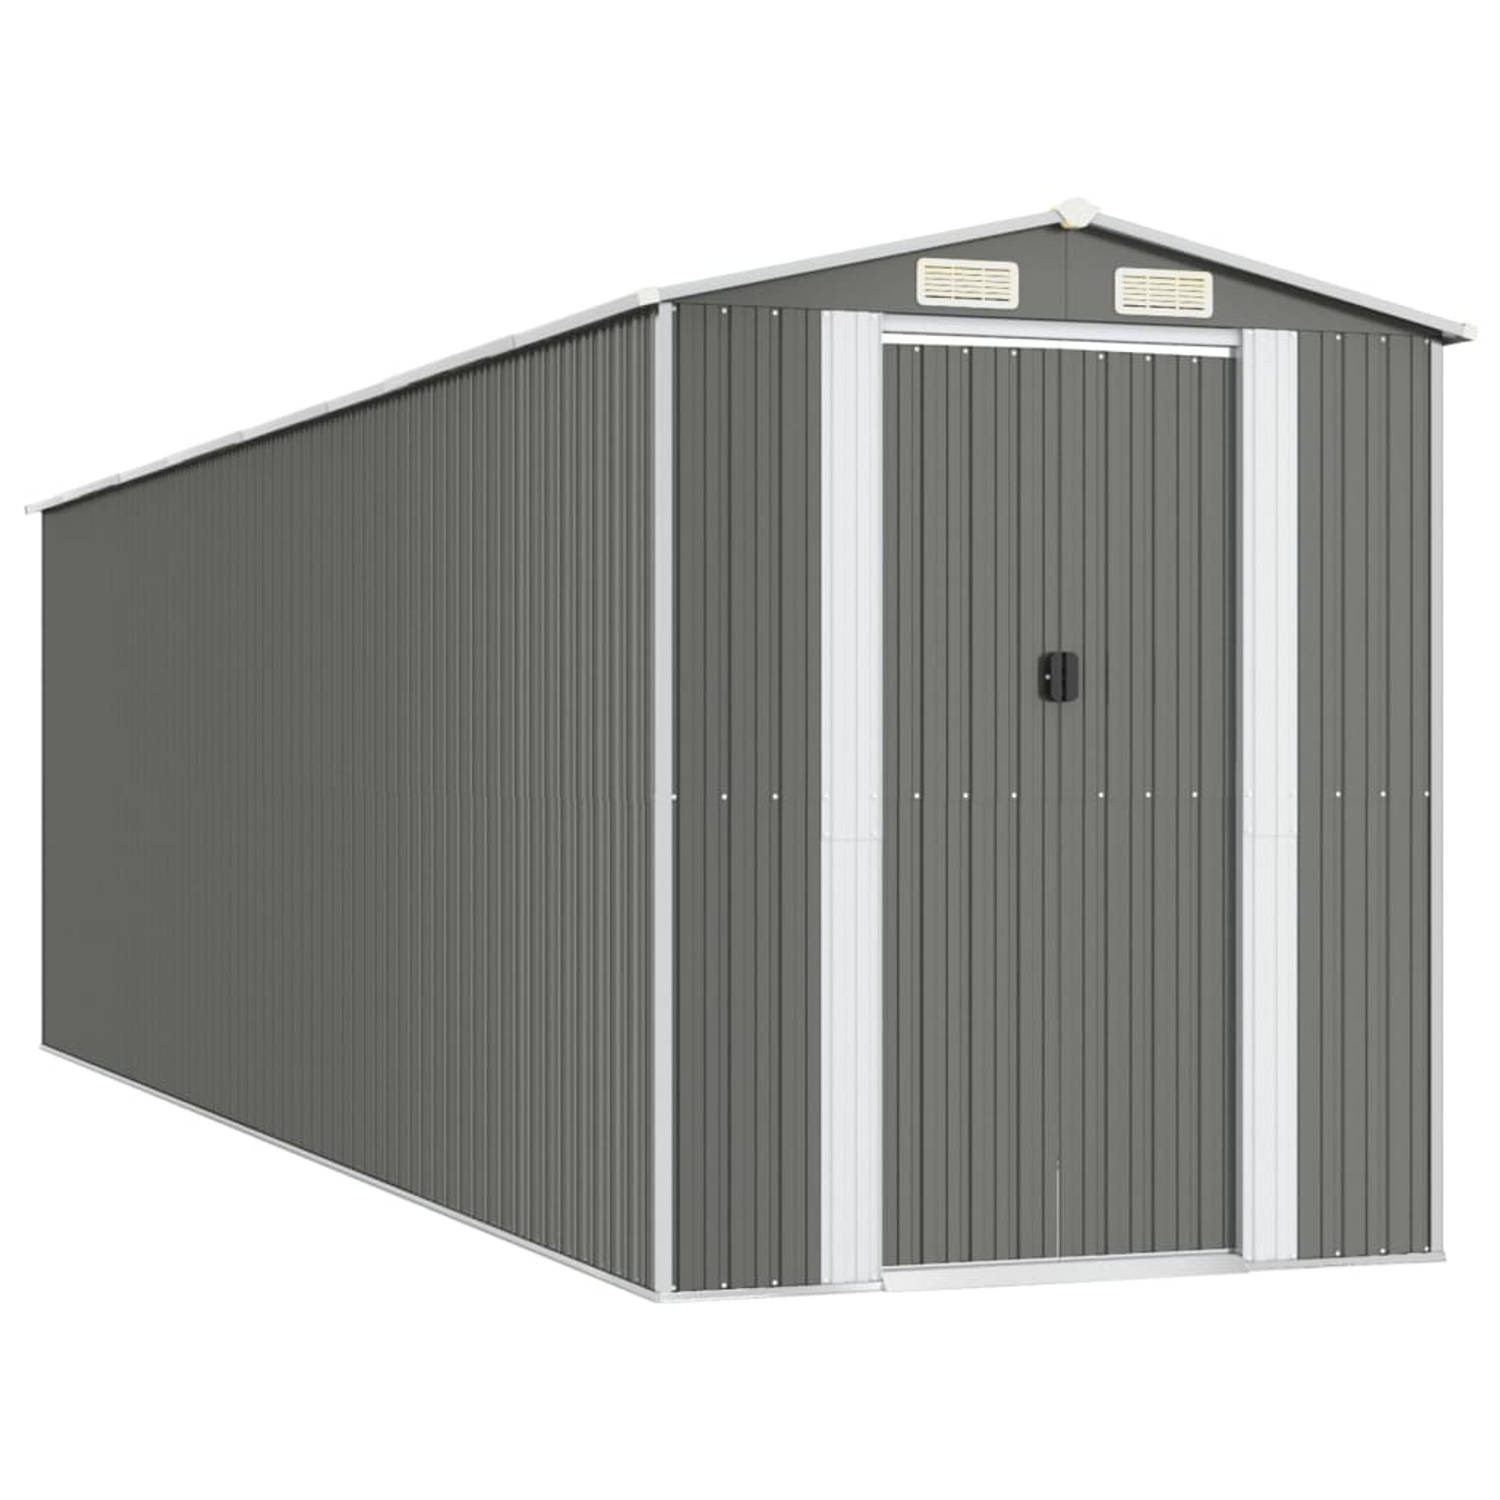 The Living Store Opslagcontainer - Gegalvaniseerd Staal - 192x689x223cm - Lichtgrijs